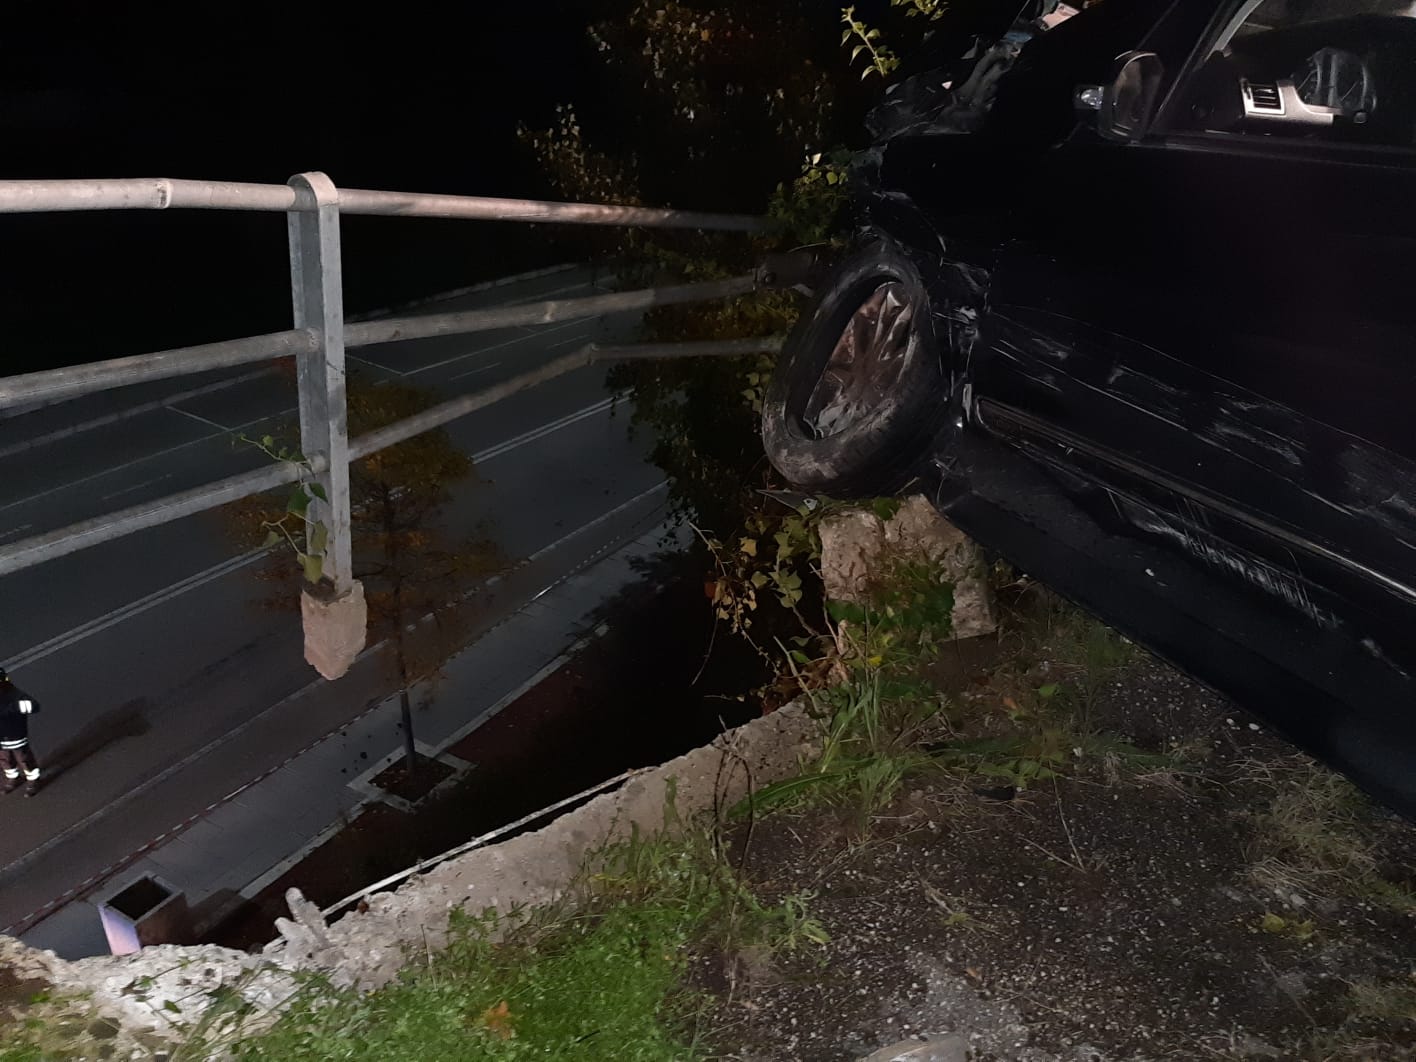 Benevento| Mercedes colpisce 6 auto in sosta e abbatte muro di recinzione/FOTO